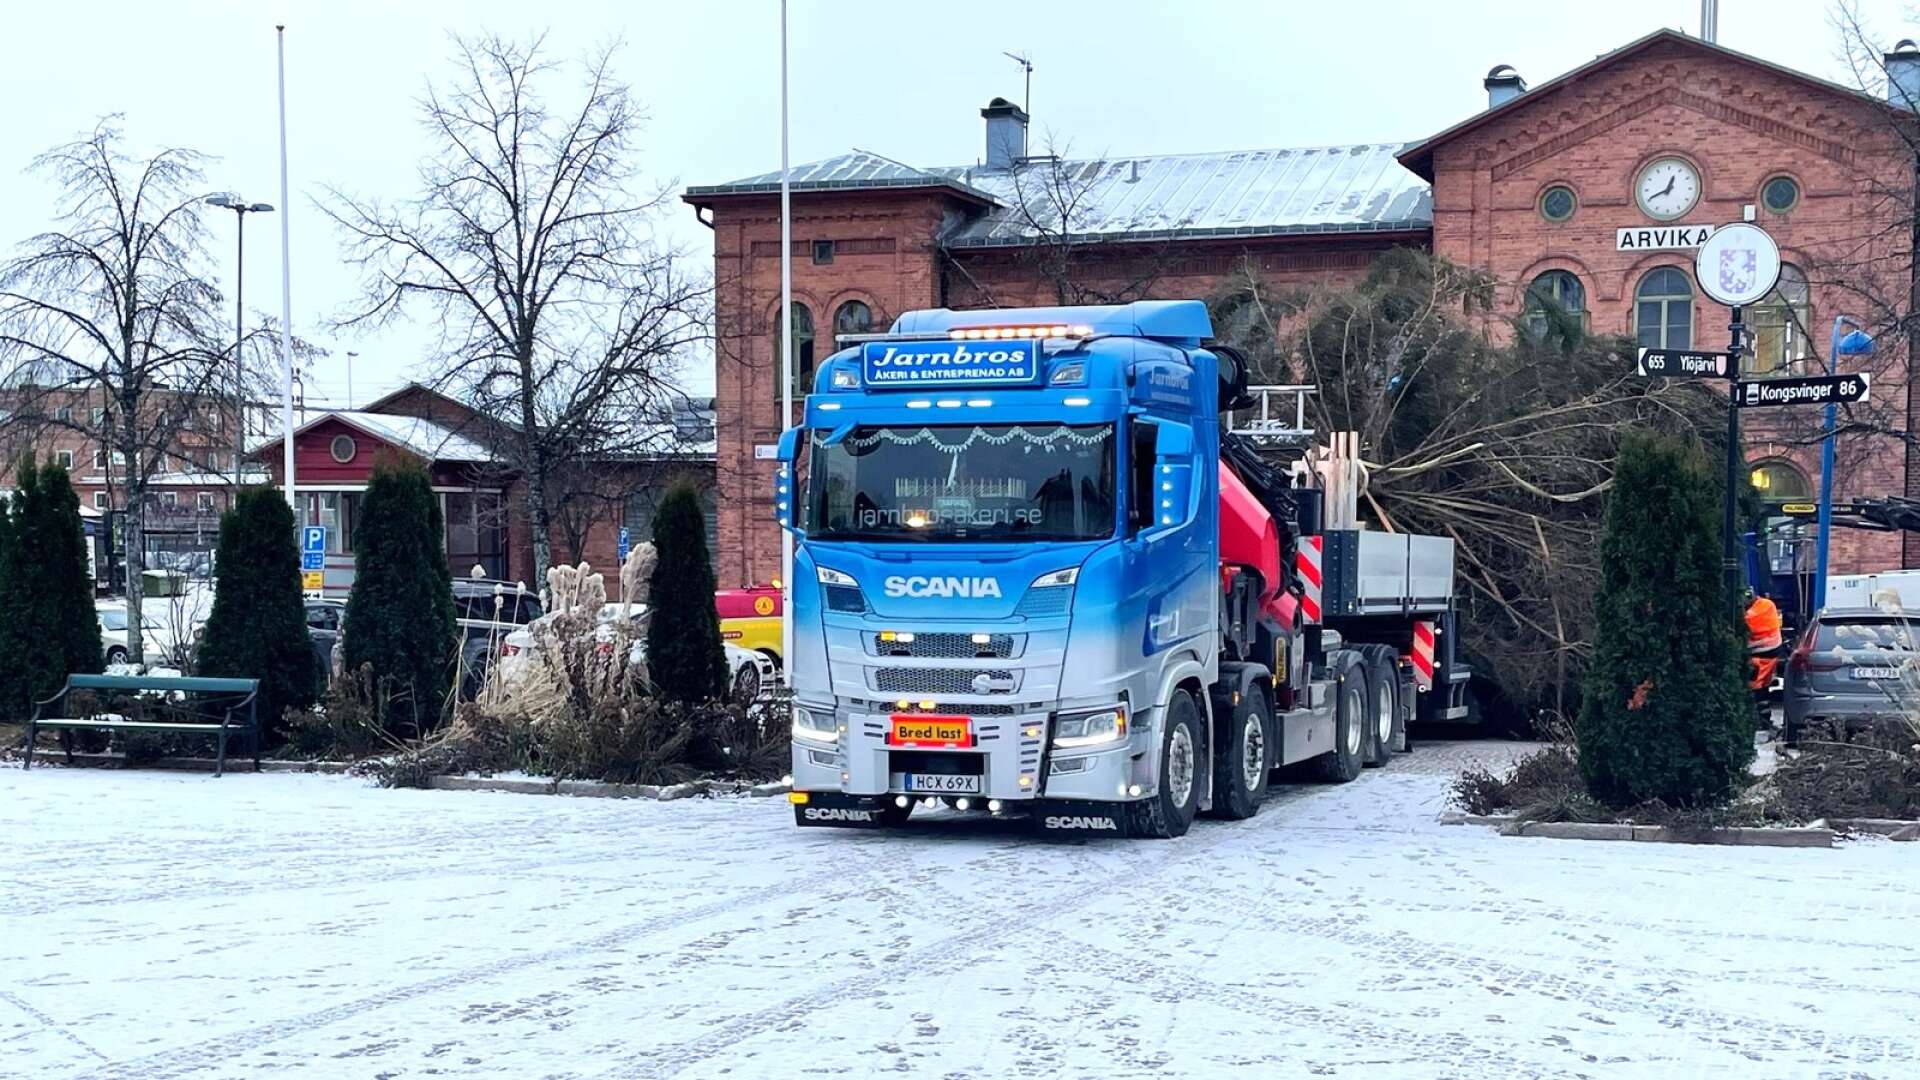 Här anländer årets julgran till torget i Arvika vid lunchtid på tisdag med hjälp av en kranbil.